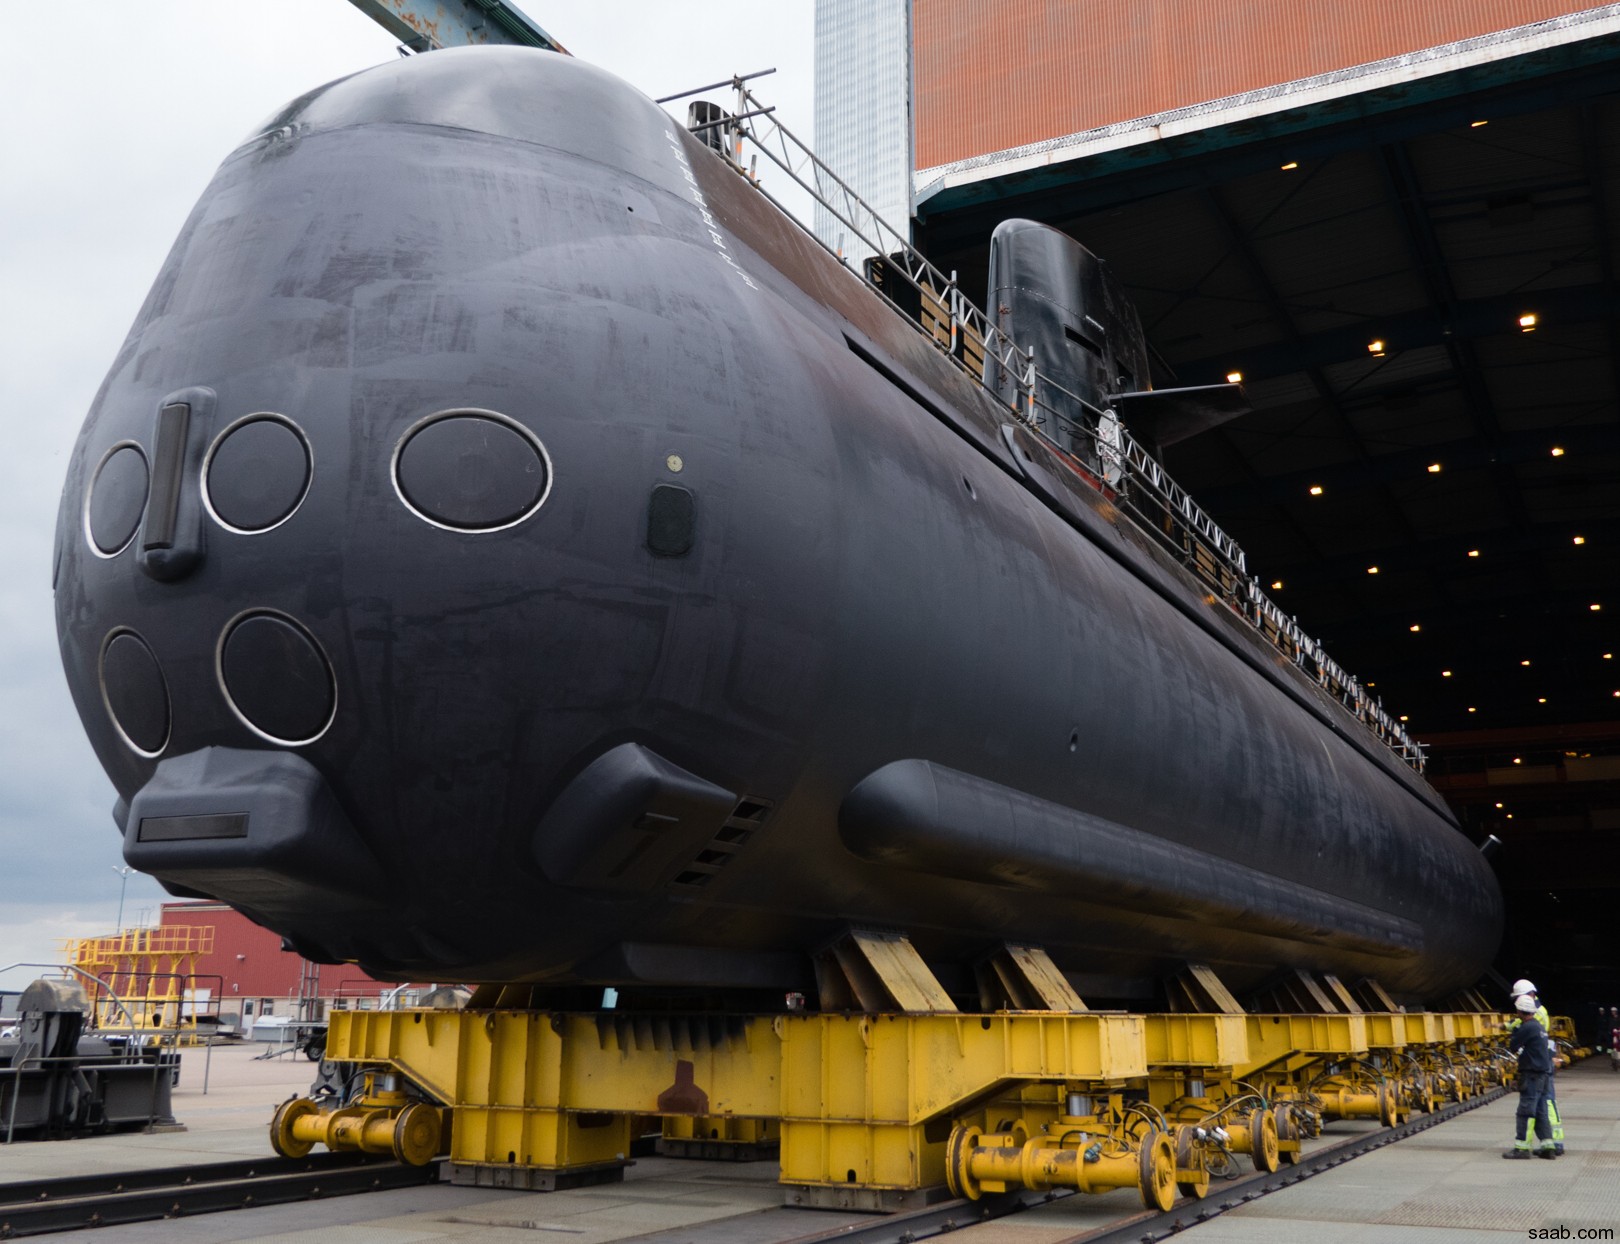 hswms hms gotland gtd class submarine ssk swedish navy svenska marinen försvarsmakten kockums 33